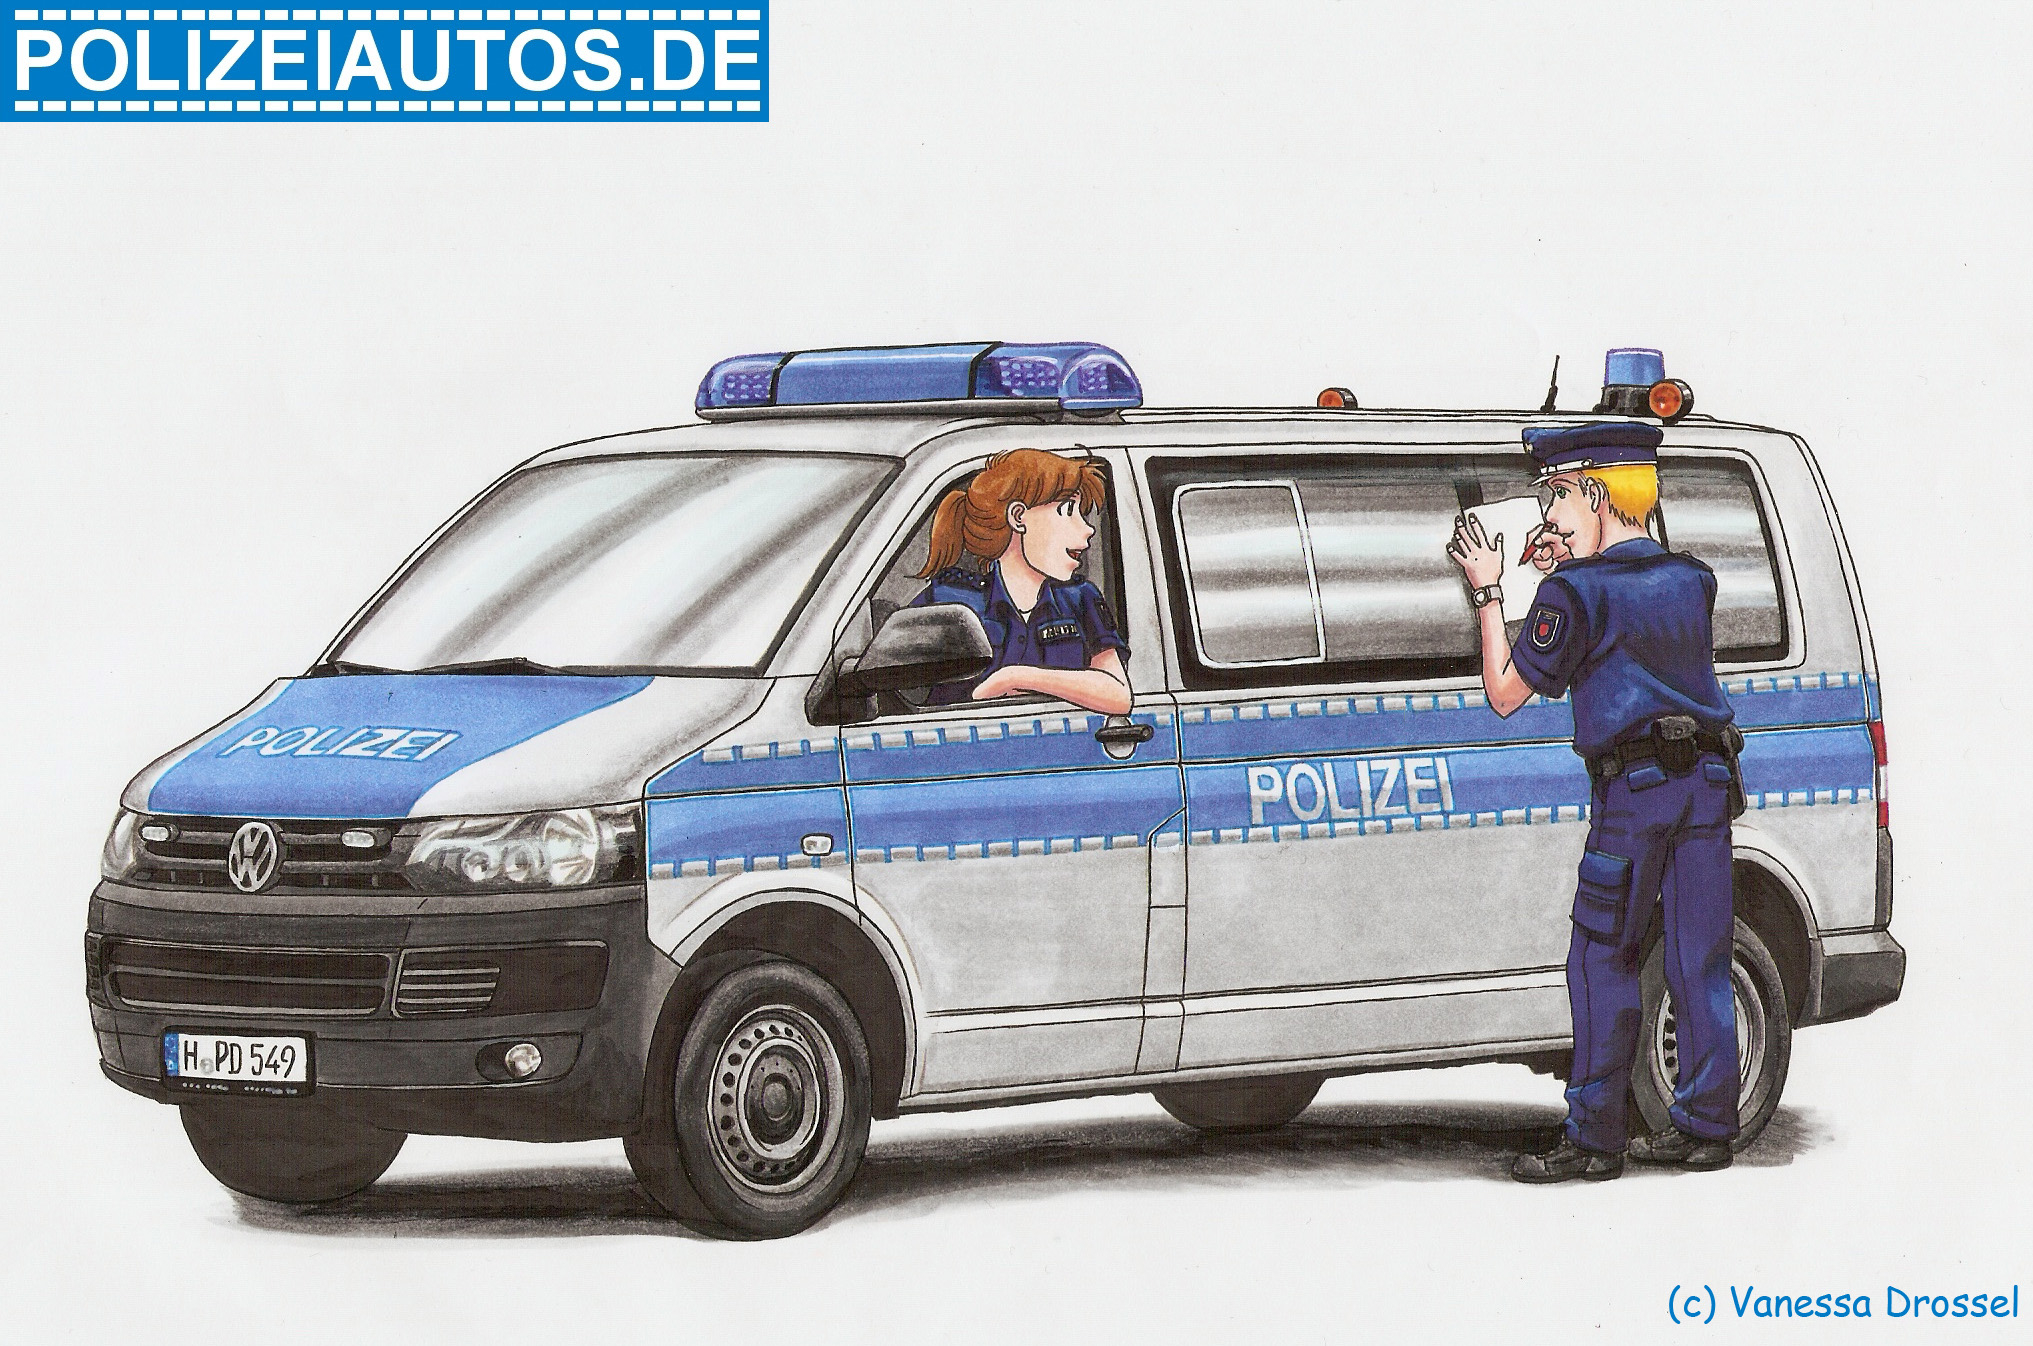 Polizeiautos.de über Polizeiauto Zum Ausmalen